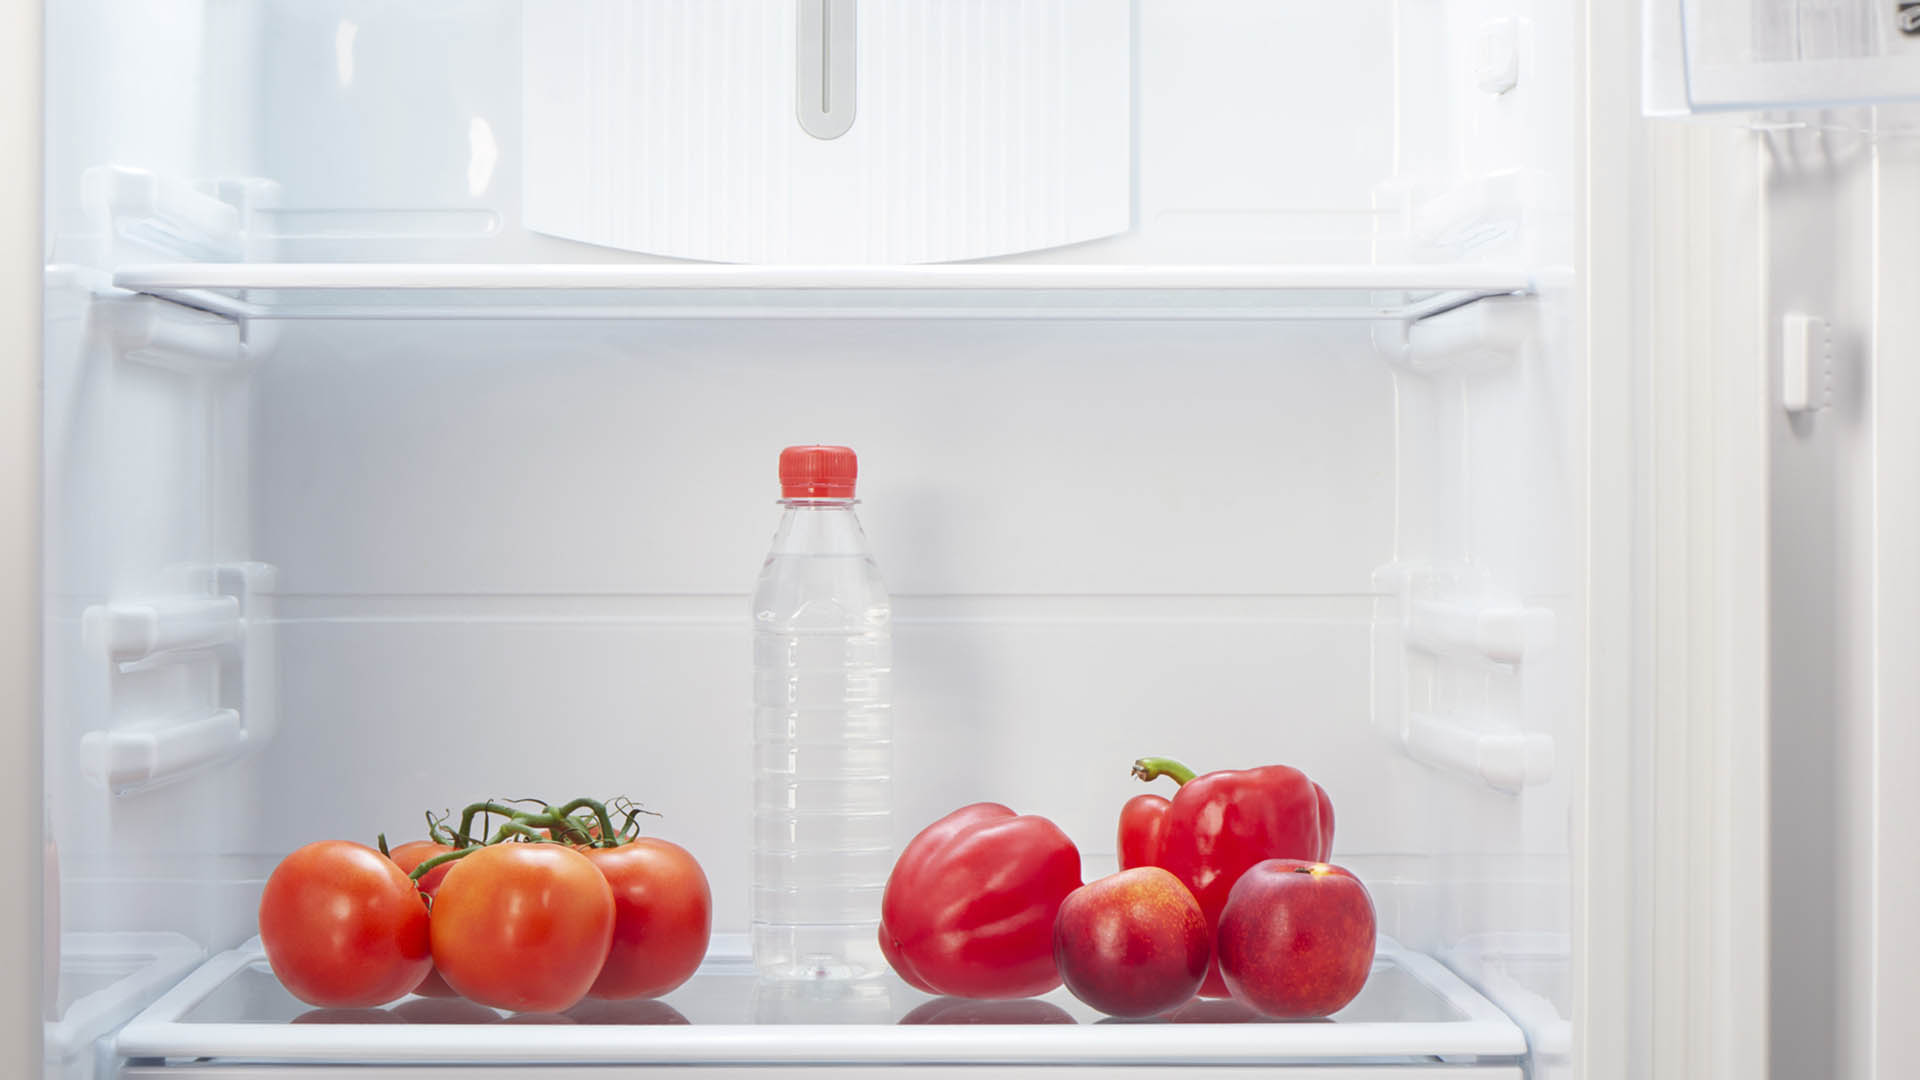 Los tomates, los kiwis y las manzanas, entre las frutas y verduras que aportan hidratación